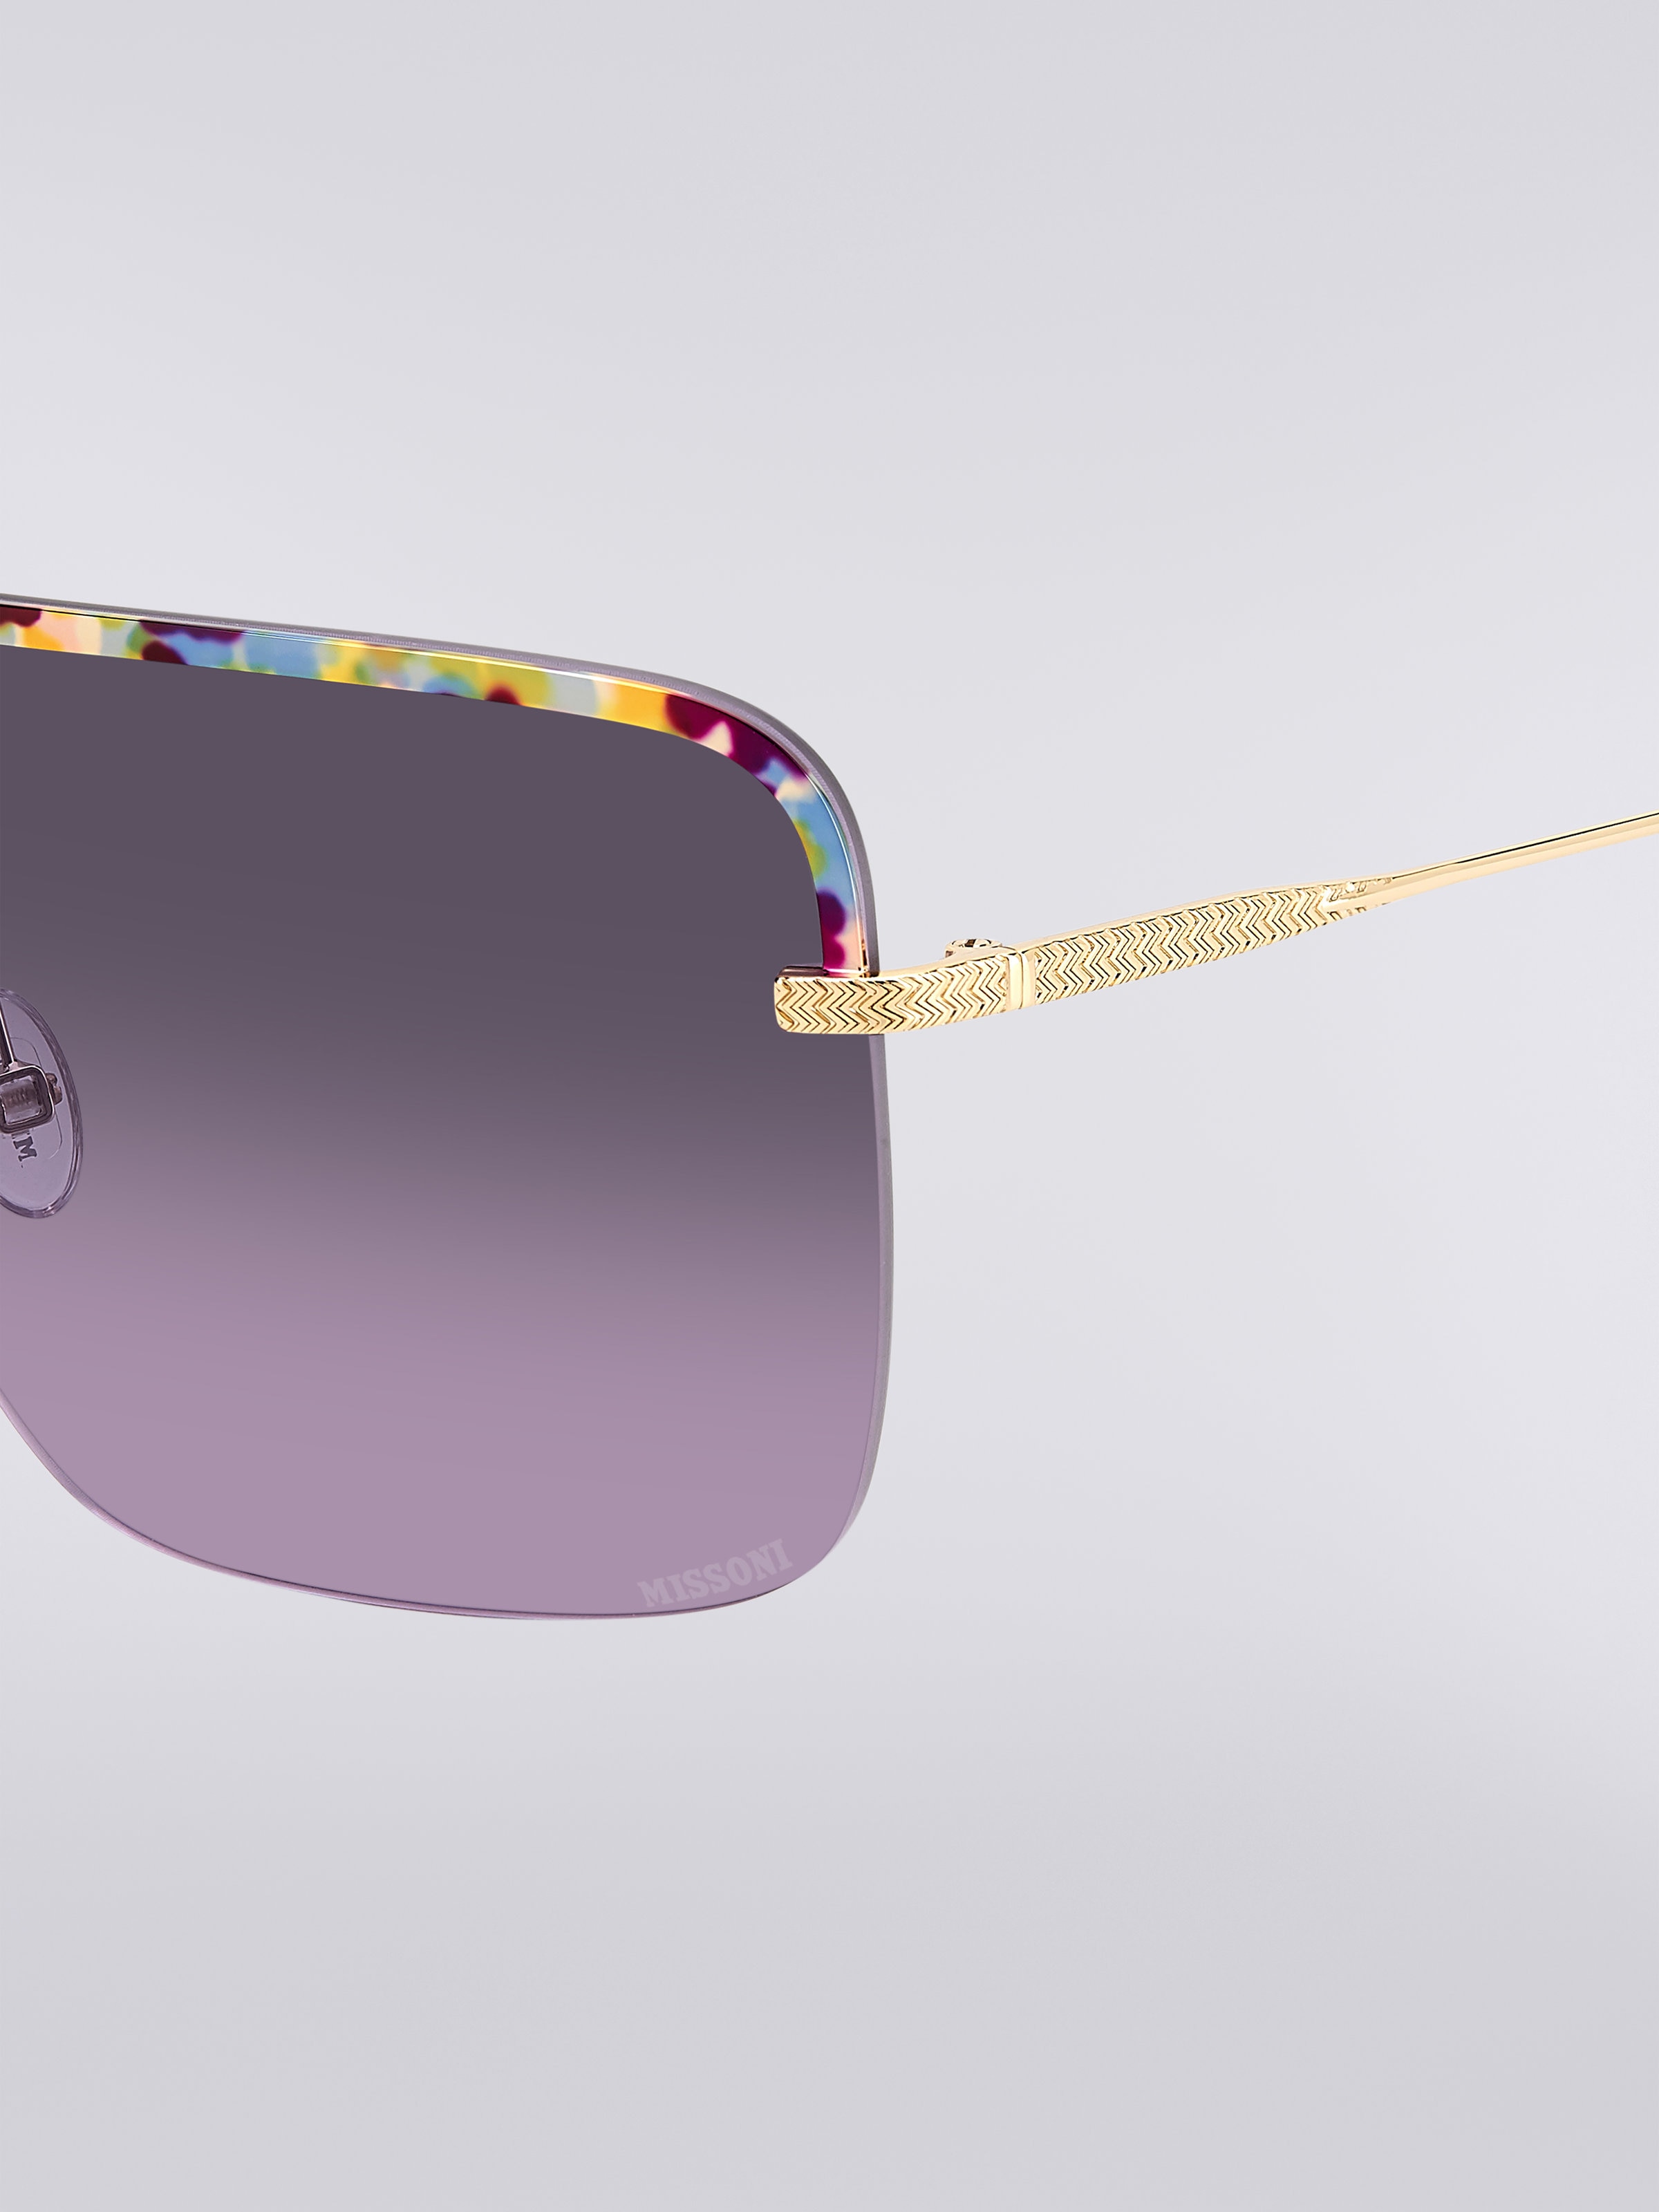 Missoni Seasonal Metal Sunglasses, Multicoloured  - 3